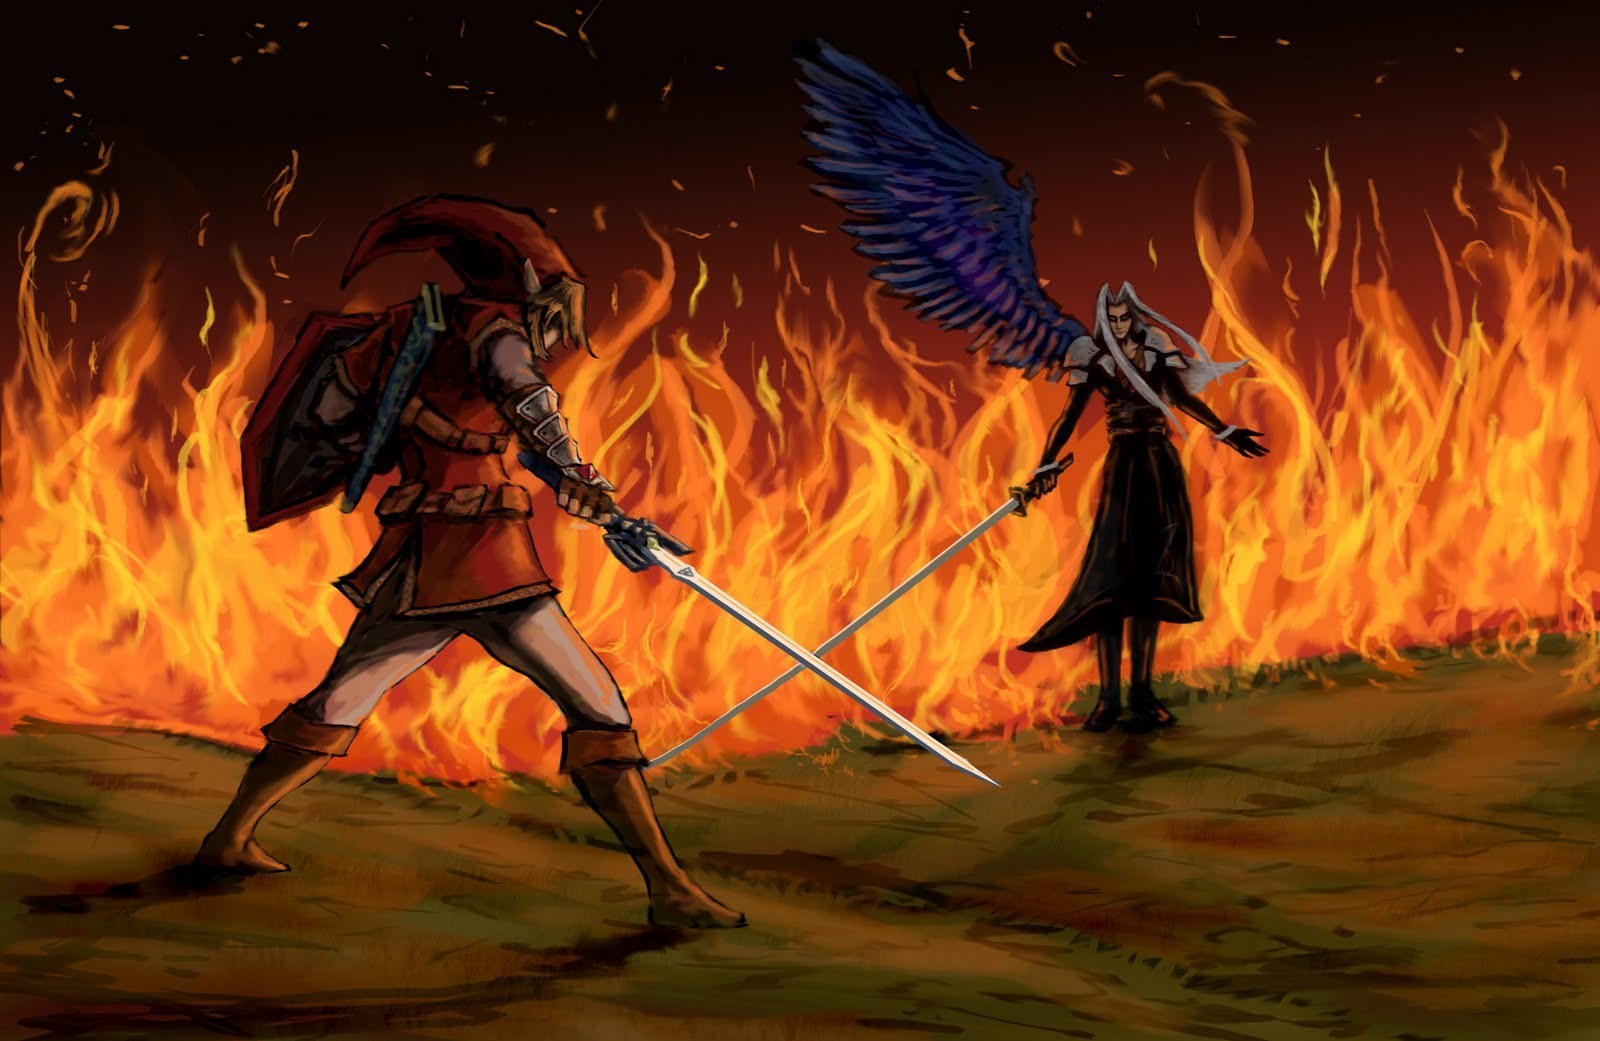 Link-vs-Sephiroth-the-legend-of-zelda-17519055-1600-1041.jpg